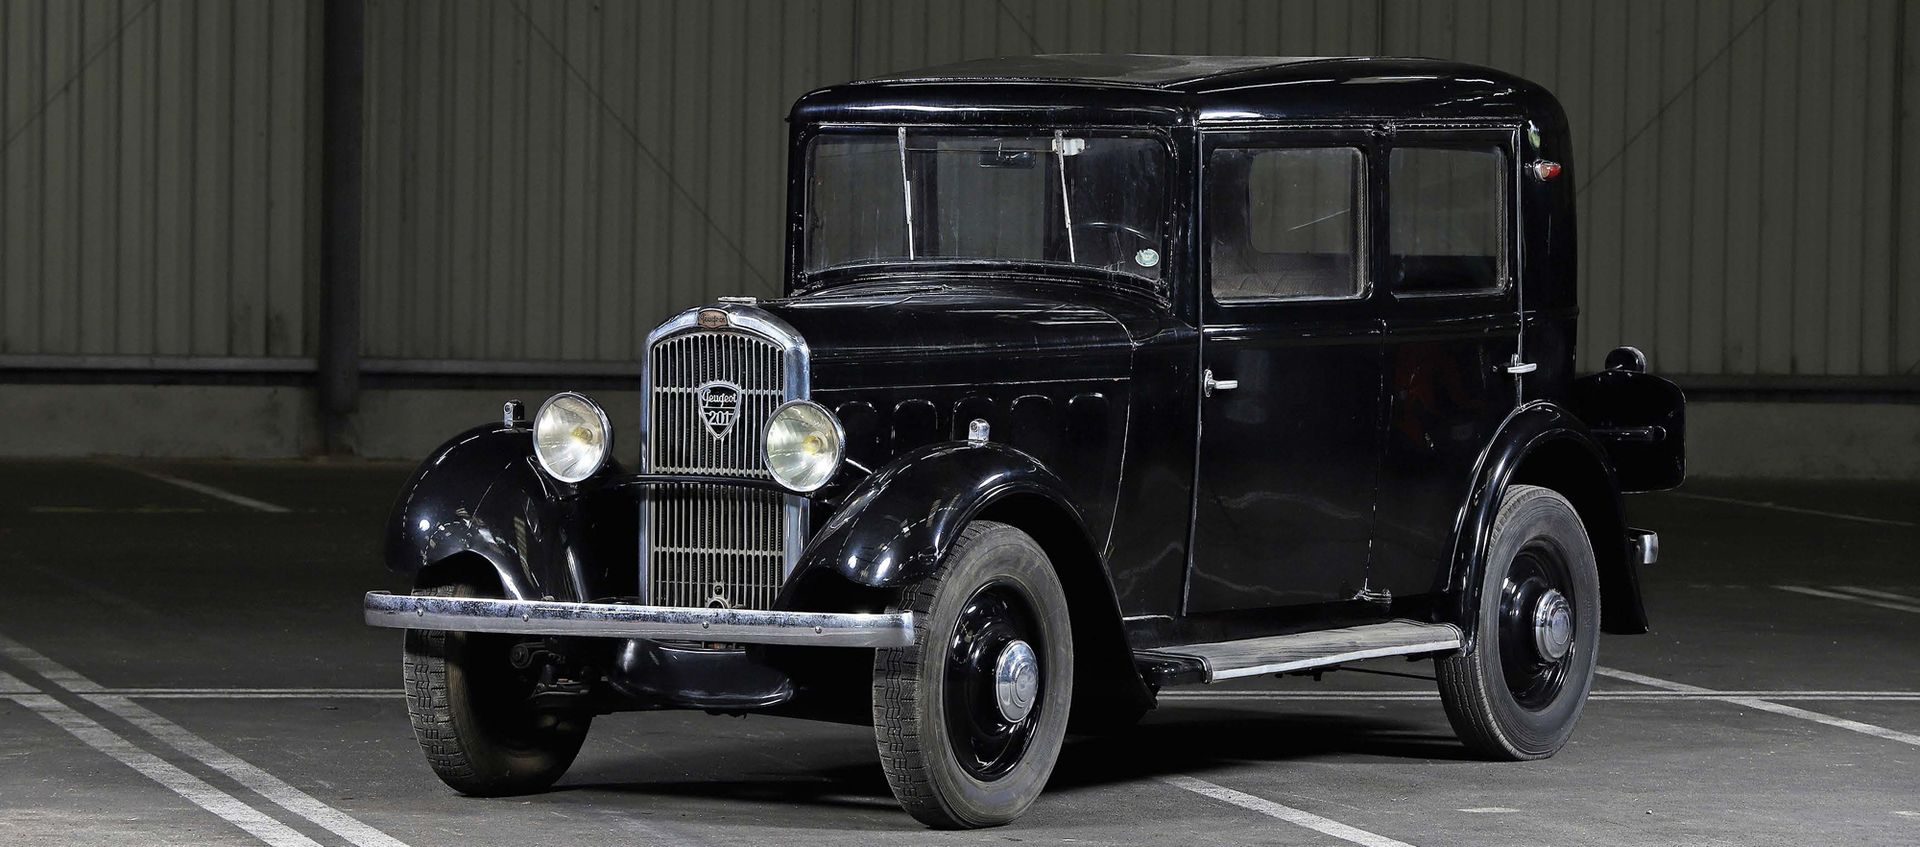 1933 PEUGEOT 201 B 
Ohne Vorbehalt



Ikonischer Peugeot

Innovativere B-Version&hellip;